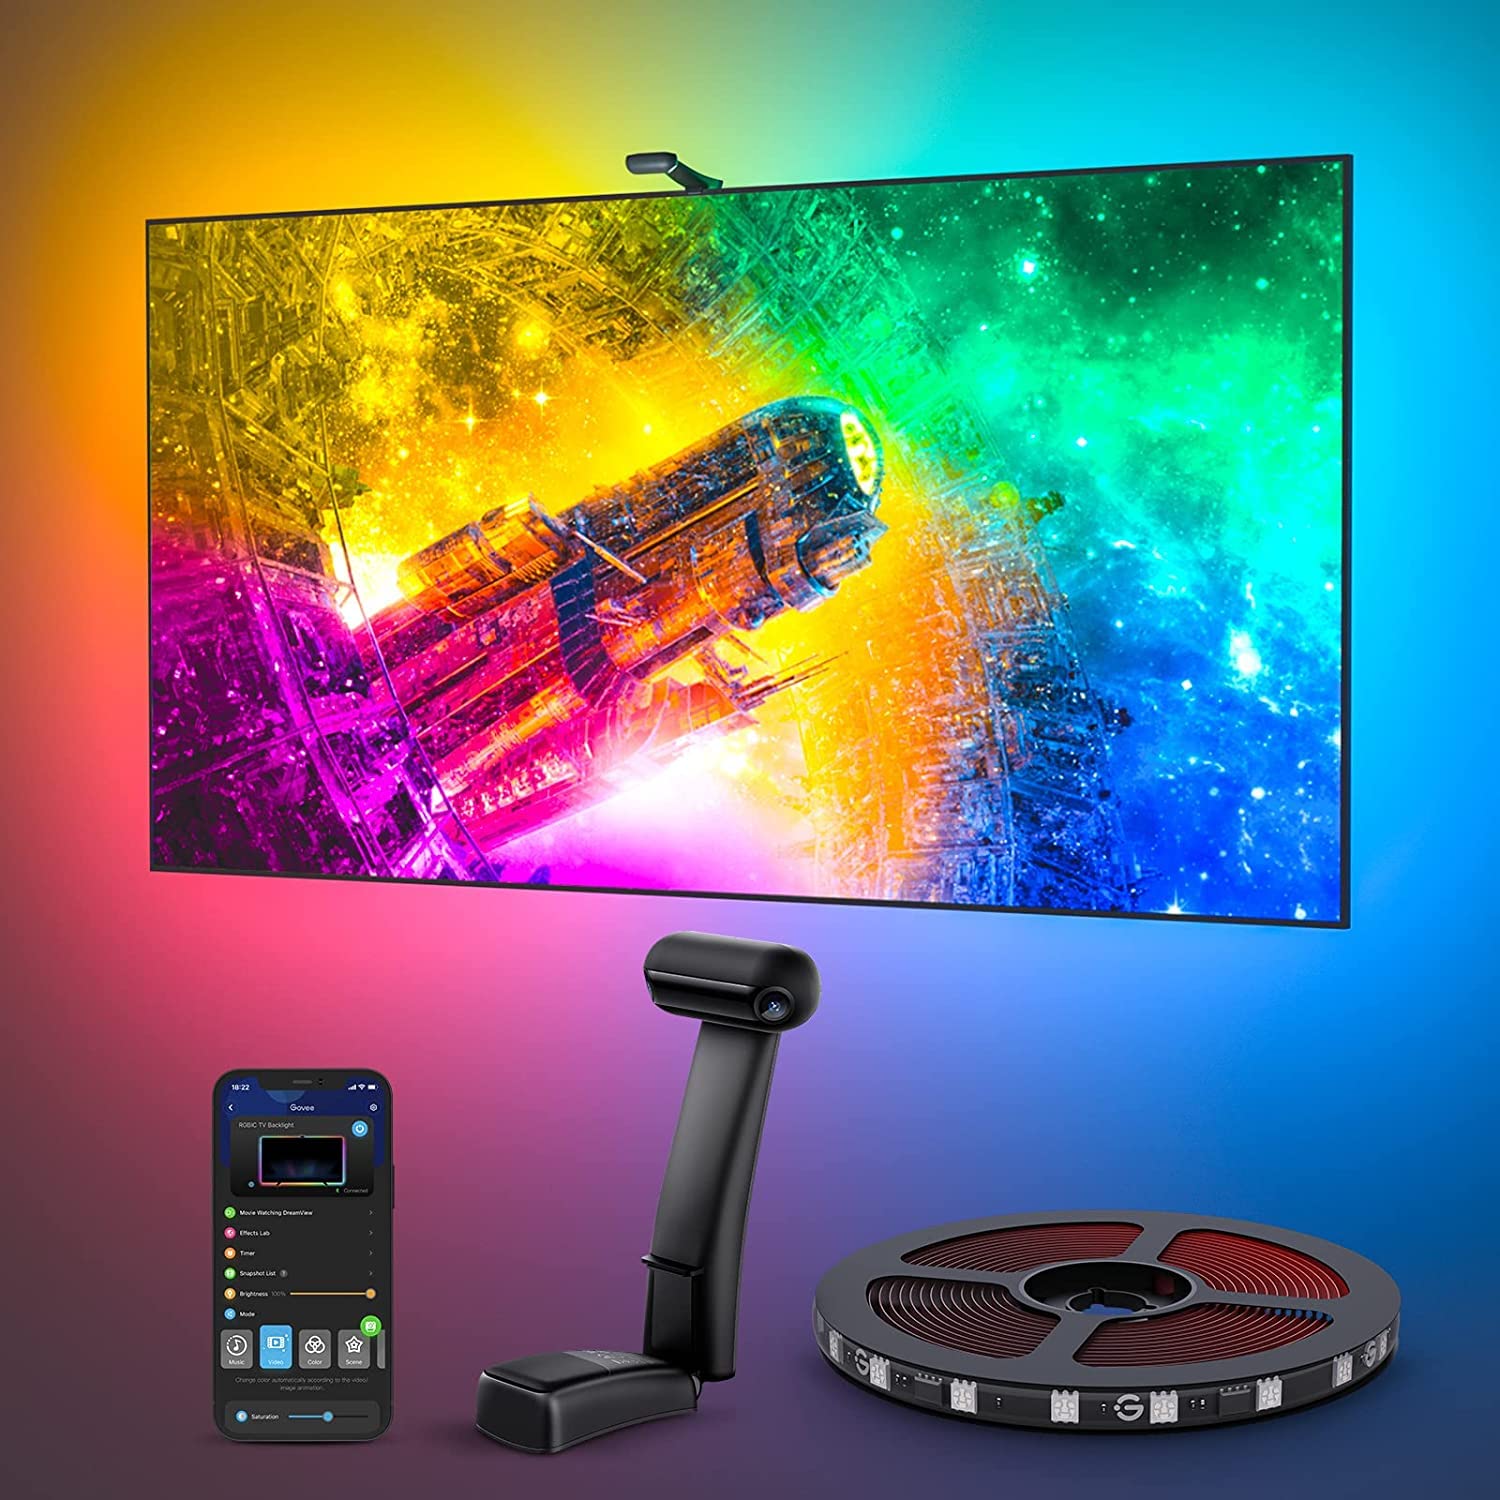  Govee Envisual TV LED バックライト T2 デュアルカメラ付き、11.8 フィート RGBIC Wi-Fi LED ストリップライト、55 ～ 65 インチ TV 用、ダブル ストリップ ライト...